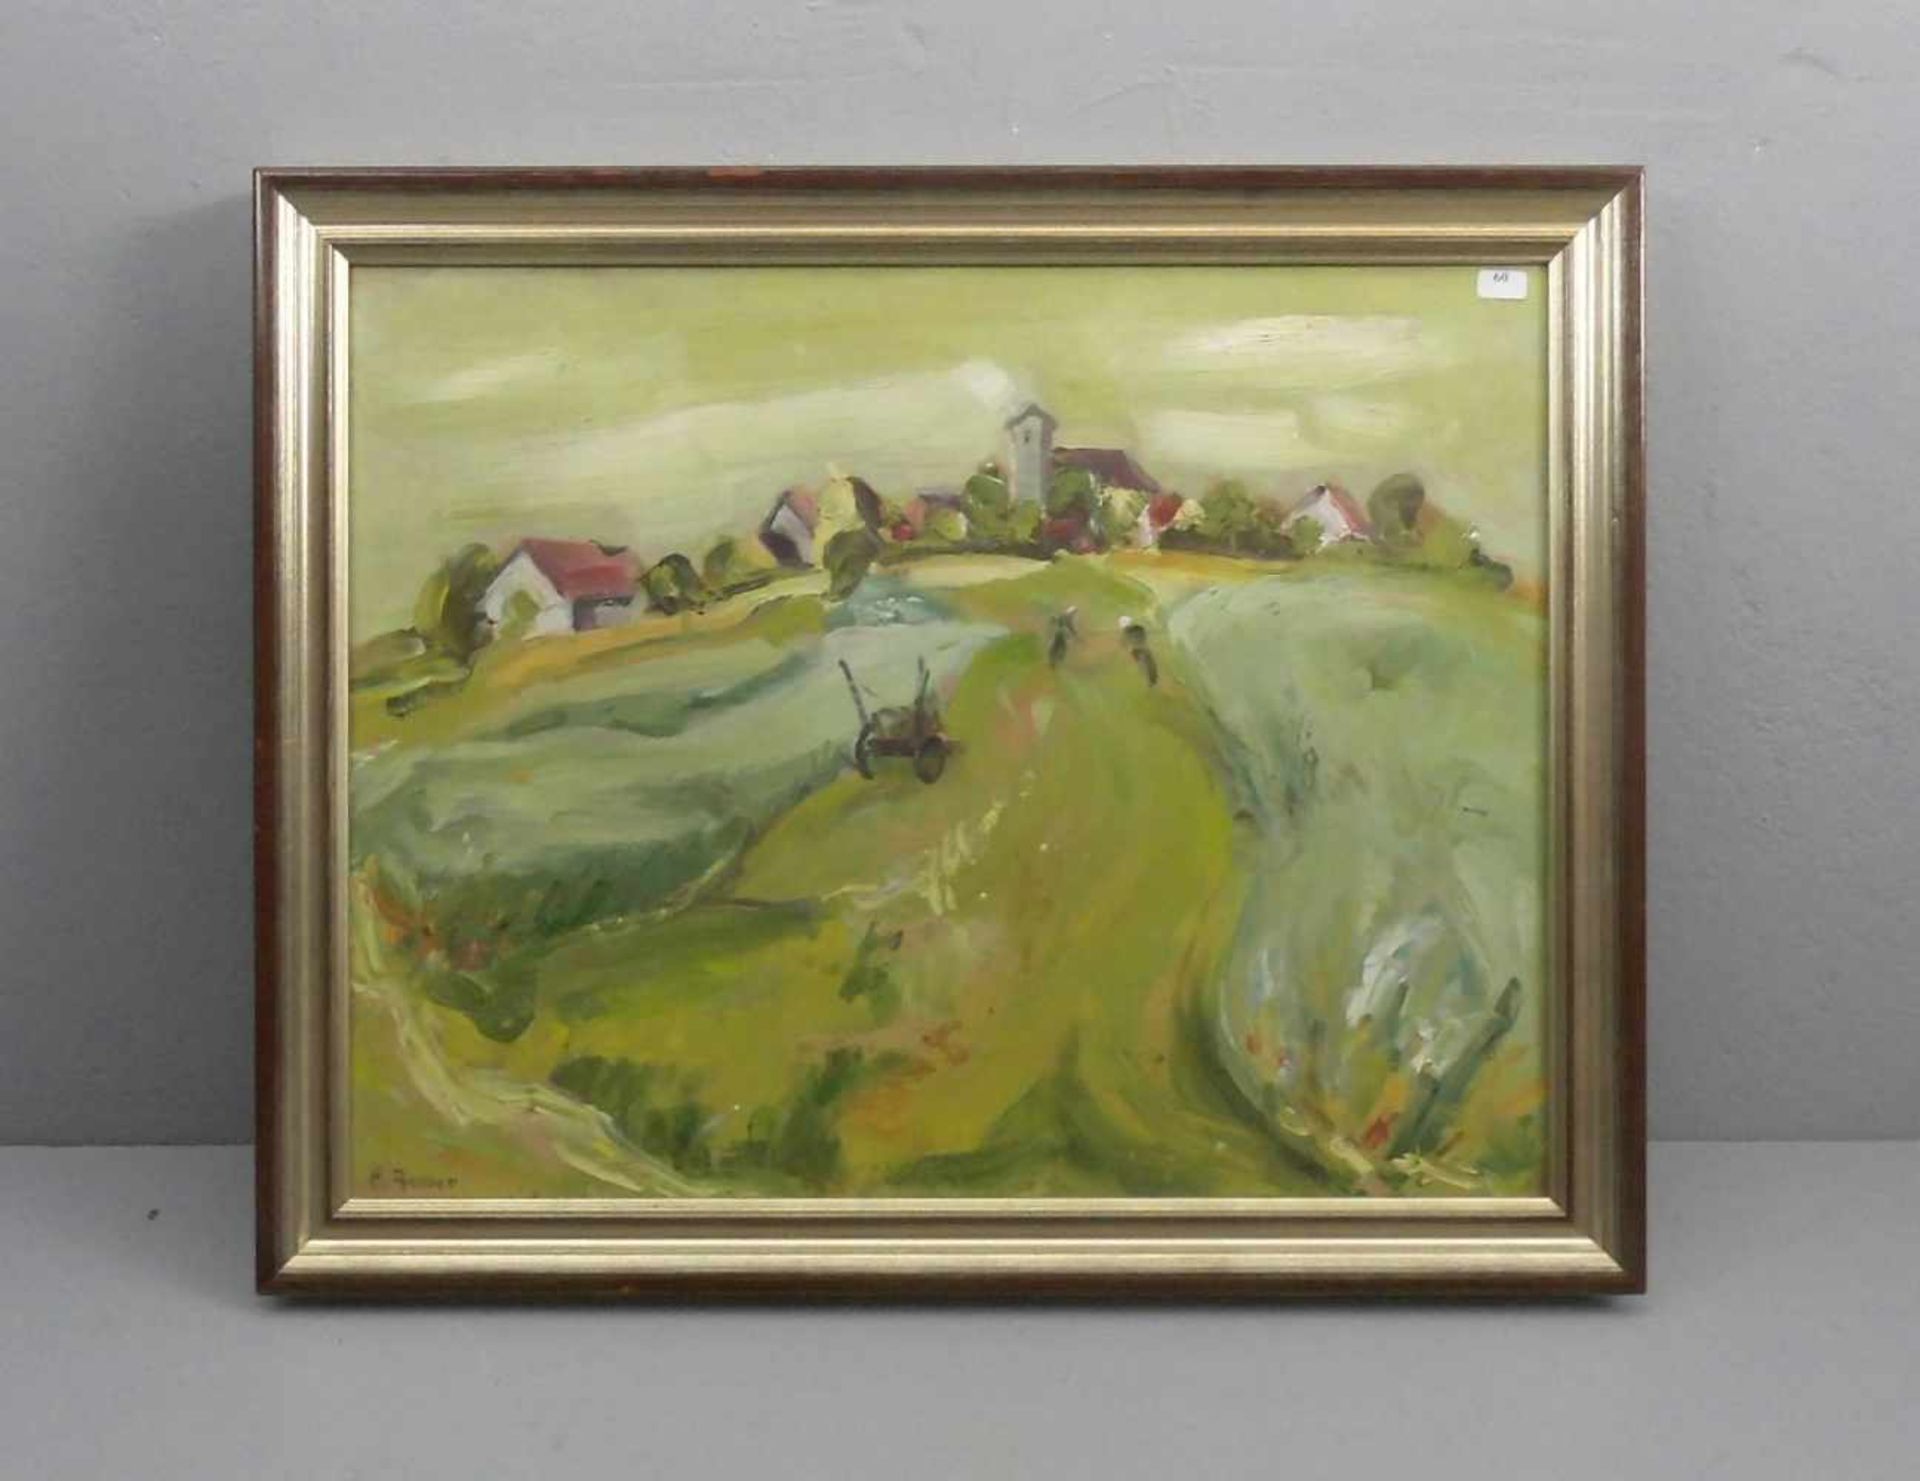 JETTER, EDGAR (geb. 1929), Gemälde / painting: "Sommerliche Landschaft mit fernem Dorf", Öl auf